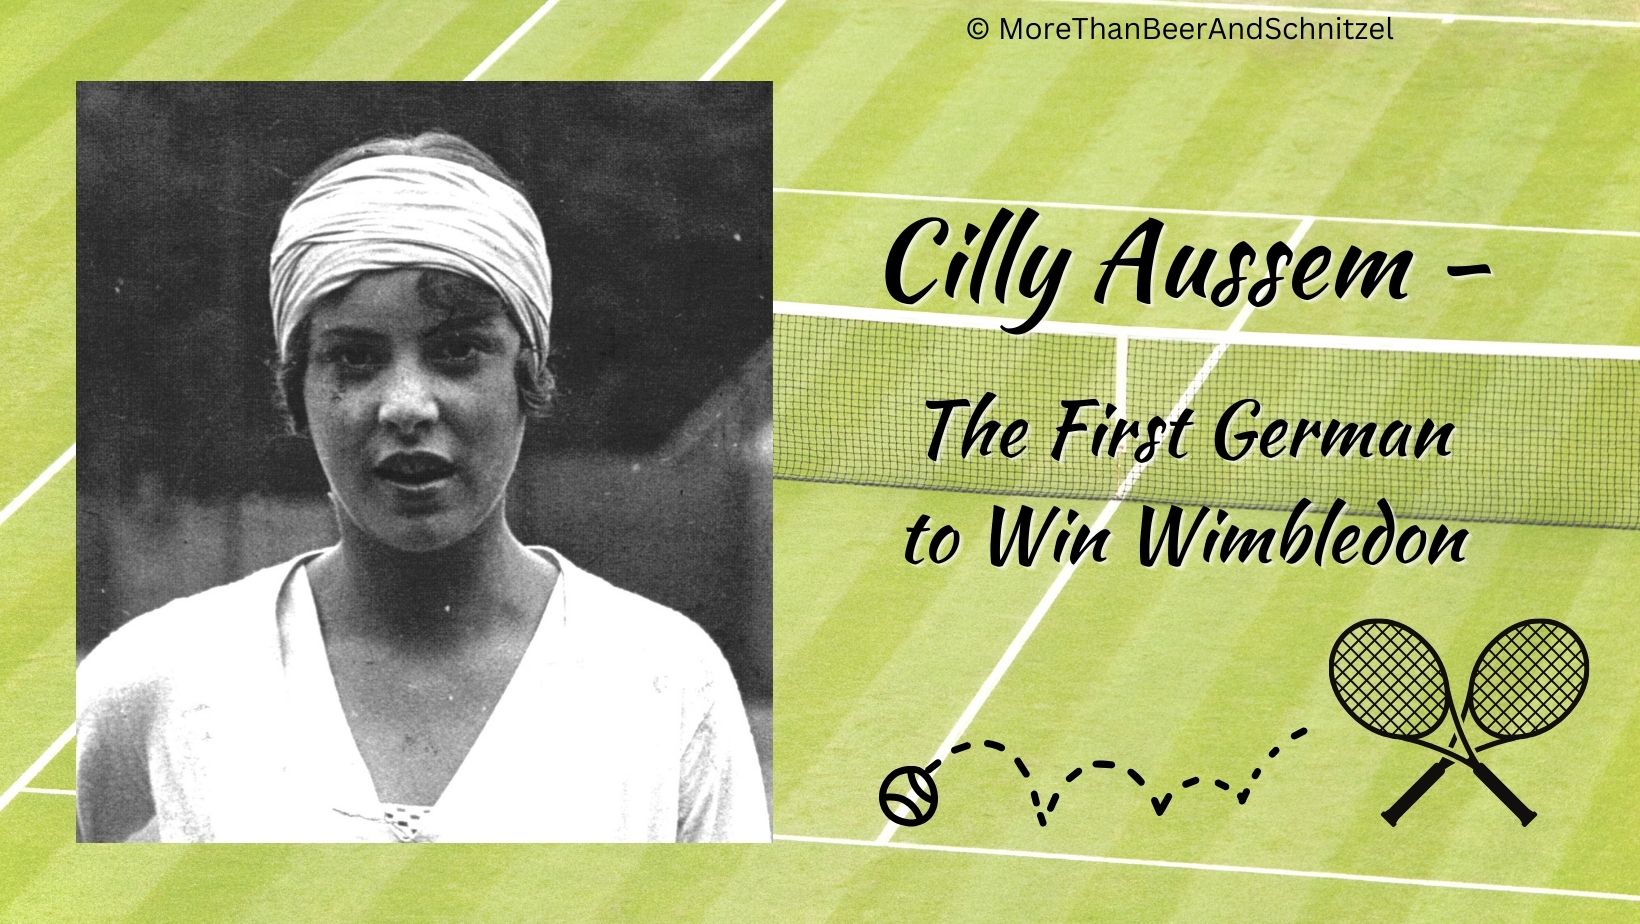 cilly aussem german tennis player won wimbledon